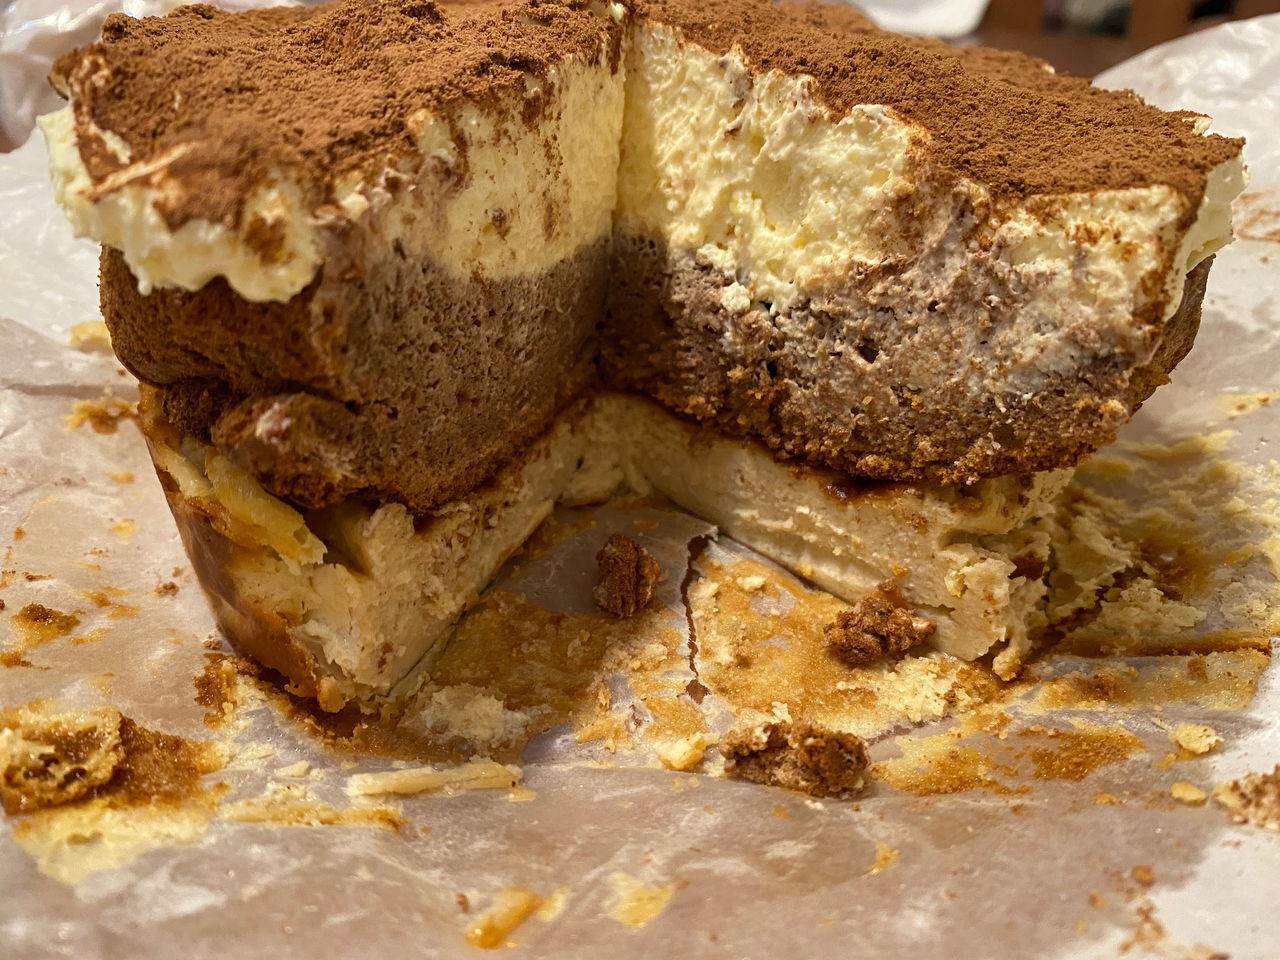 提拉米蘇巴斯克蛋糕|一次成功✔️双重口感🍴